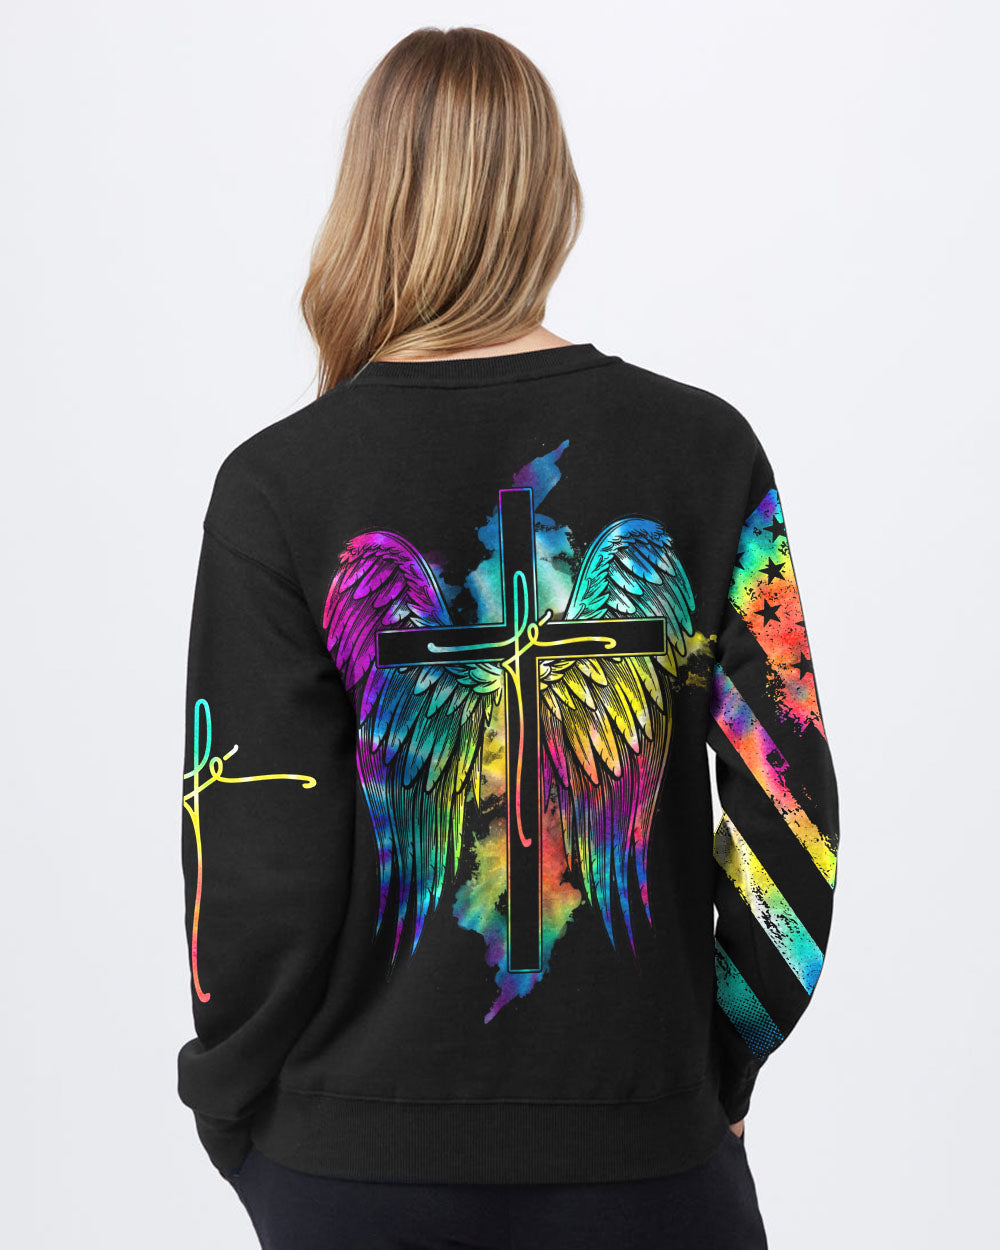 Fe' Cross Wings Colorful Watercolor Women's Christian Sweatshirt